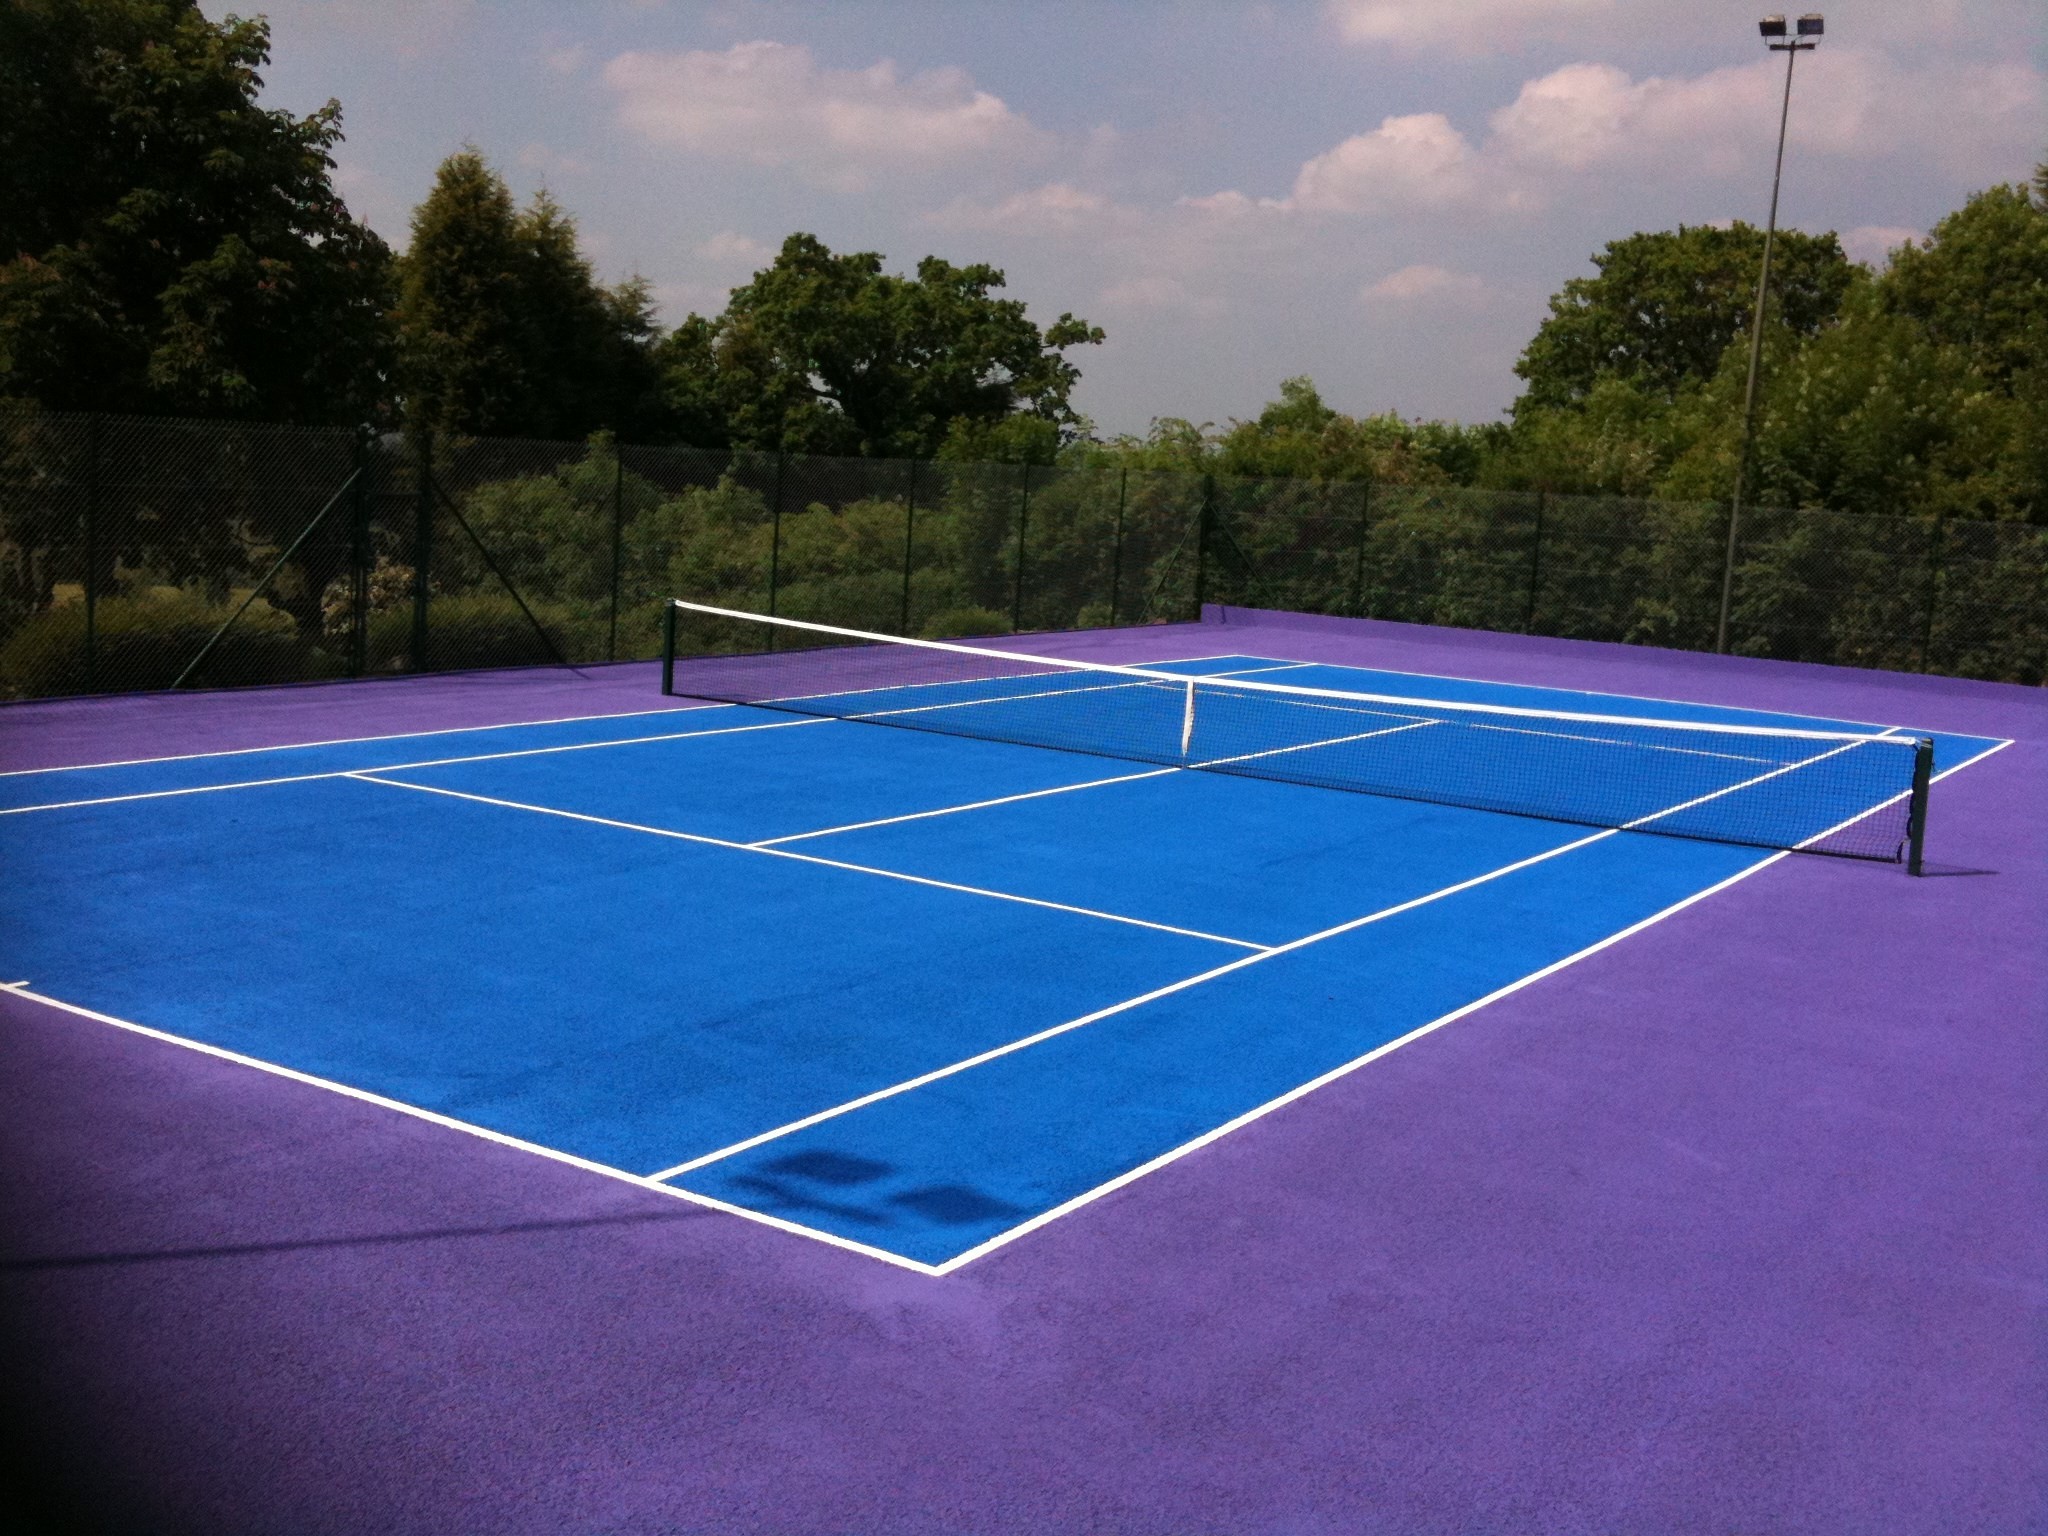 tennis court wallpaper,sport venue,tennis court,light,line,net